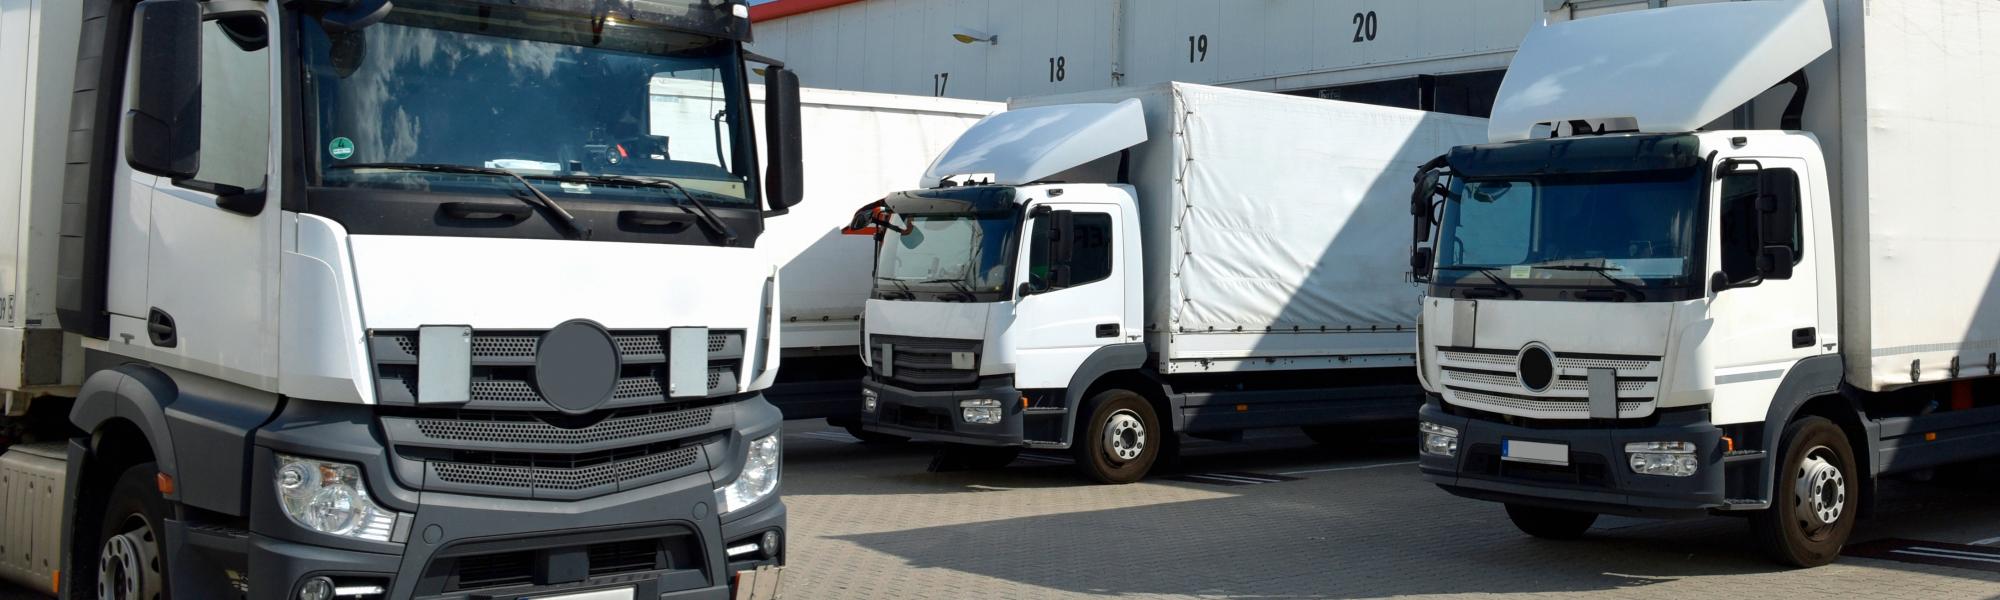 В состав IRU вошла компания Freightsafe — автор инновационных парковок